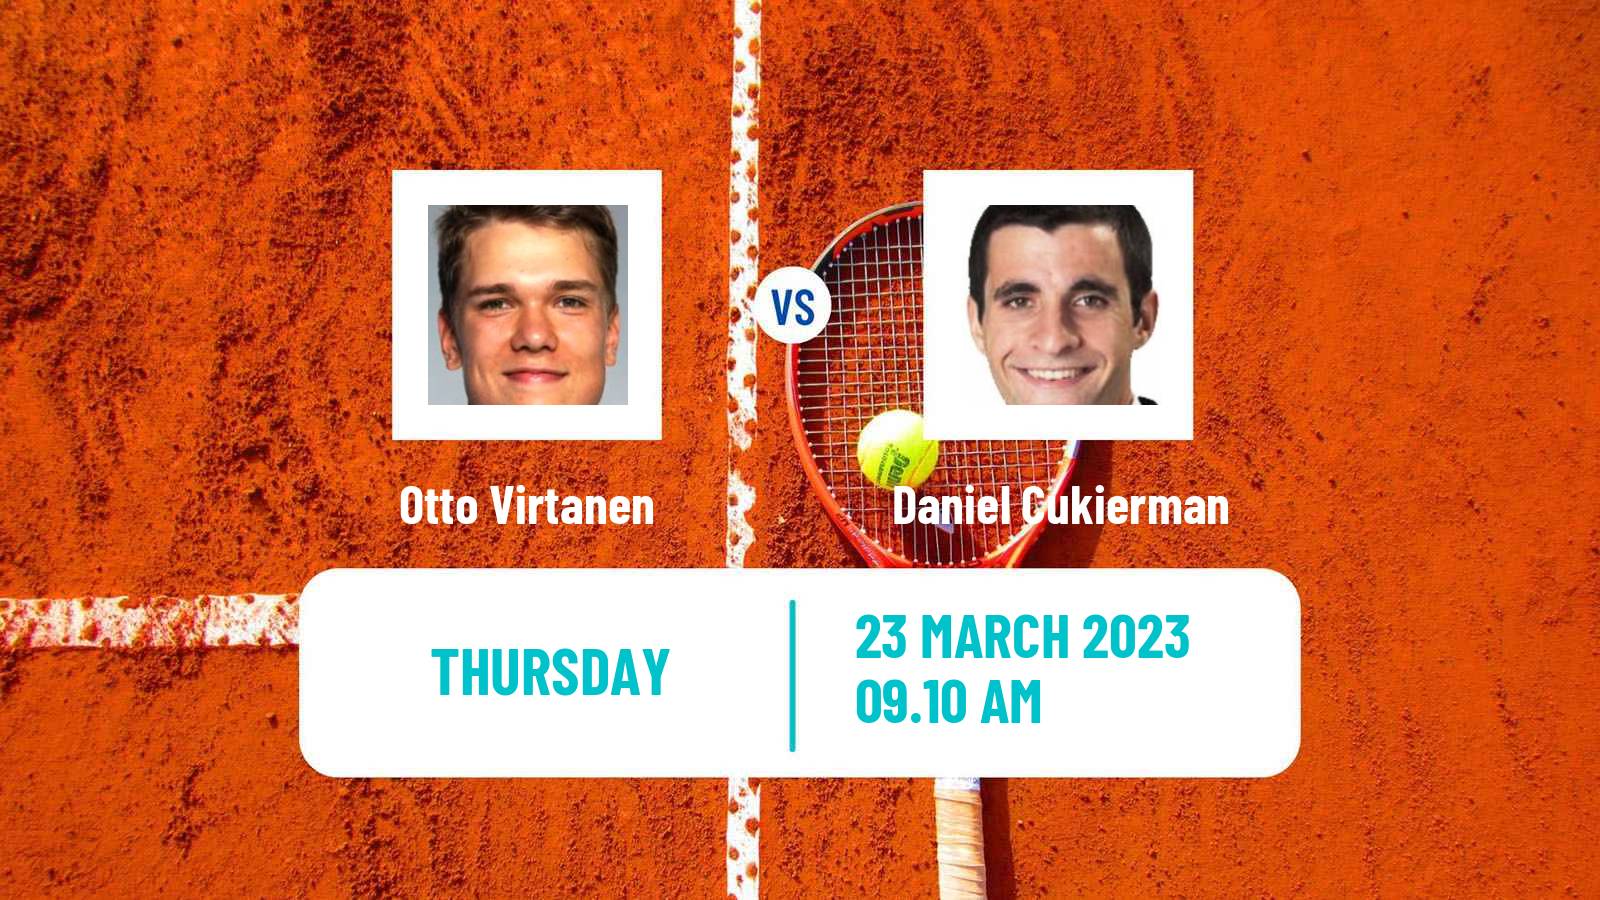 Tennis ATP Challenger Otto Virtanen - Daniel Cukierman